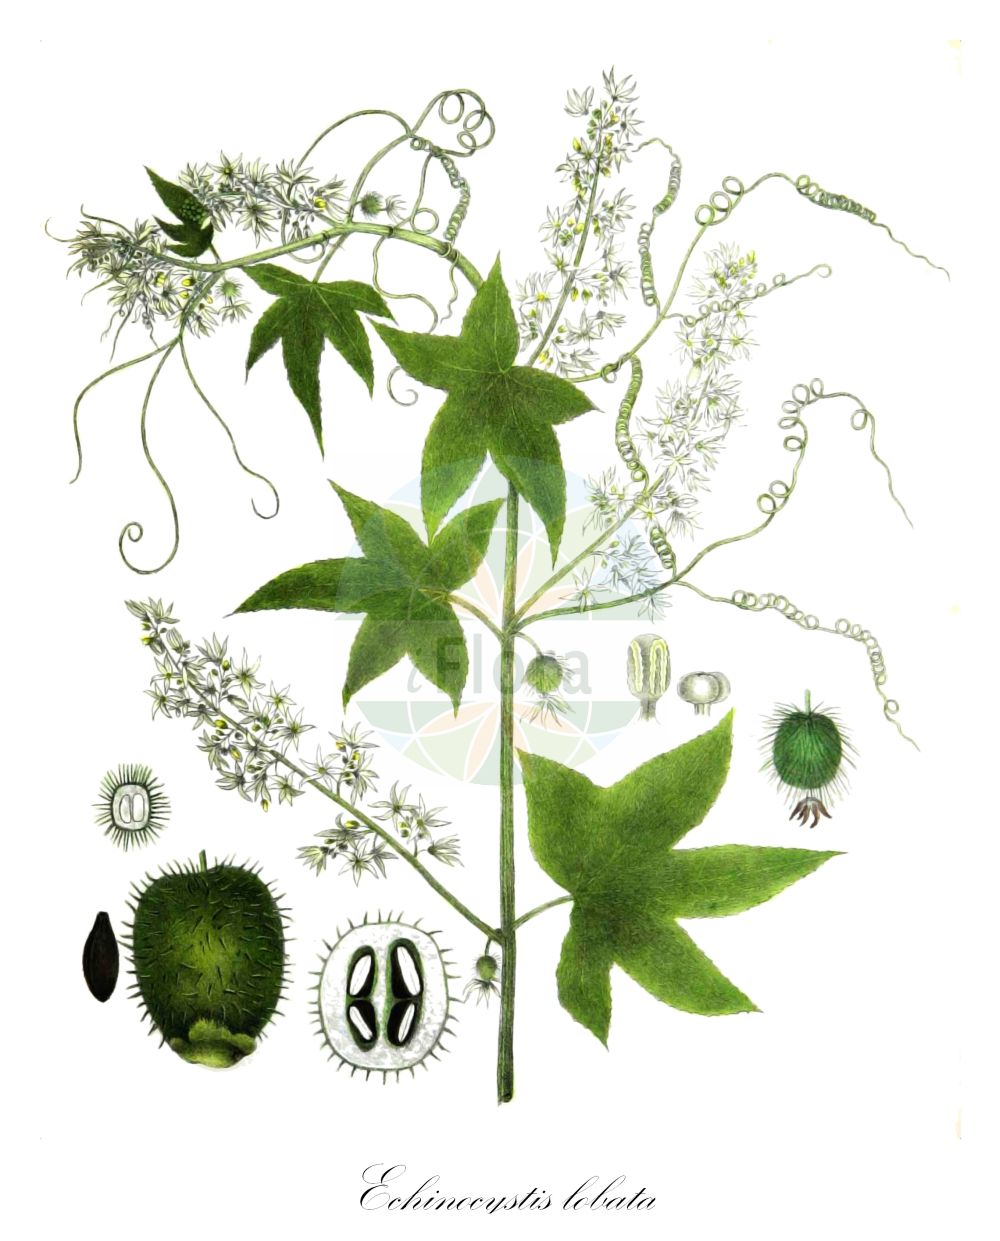 Historische Abbildung von Echinocystis lobata (Stachelgurke - Wild Cucumber). Das Bild zeigt Blatt, Bluete, Frucht und Same. ---- Historical Drawing of Echinocystis lobata (Stachelgurke - Wild Cucumber). The image is showing leaf, flower, fruit and seed.(Echinocystis lobata,Stachelgurke,Wild Cucumber,Echinocystis echinata,Echinocystis lobata,Sicyos lobatus,Stachelgurke,Gelappte Stachelgurke,Igelgurke,Wild Cucumber,Wild Balsam Apple,Echinocystis,Stachelgurke,Wild Cucumber,Cucurbitaceae,Kürbisgewächse,Cucurbit family,Blatt,Bluete,Frucht,Same,leaf,flower,fruit,seed,Torrey (1843))